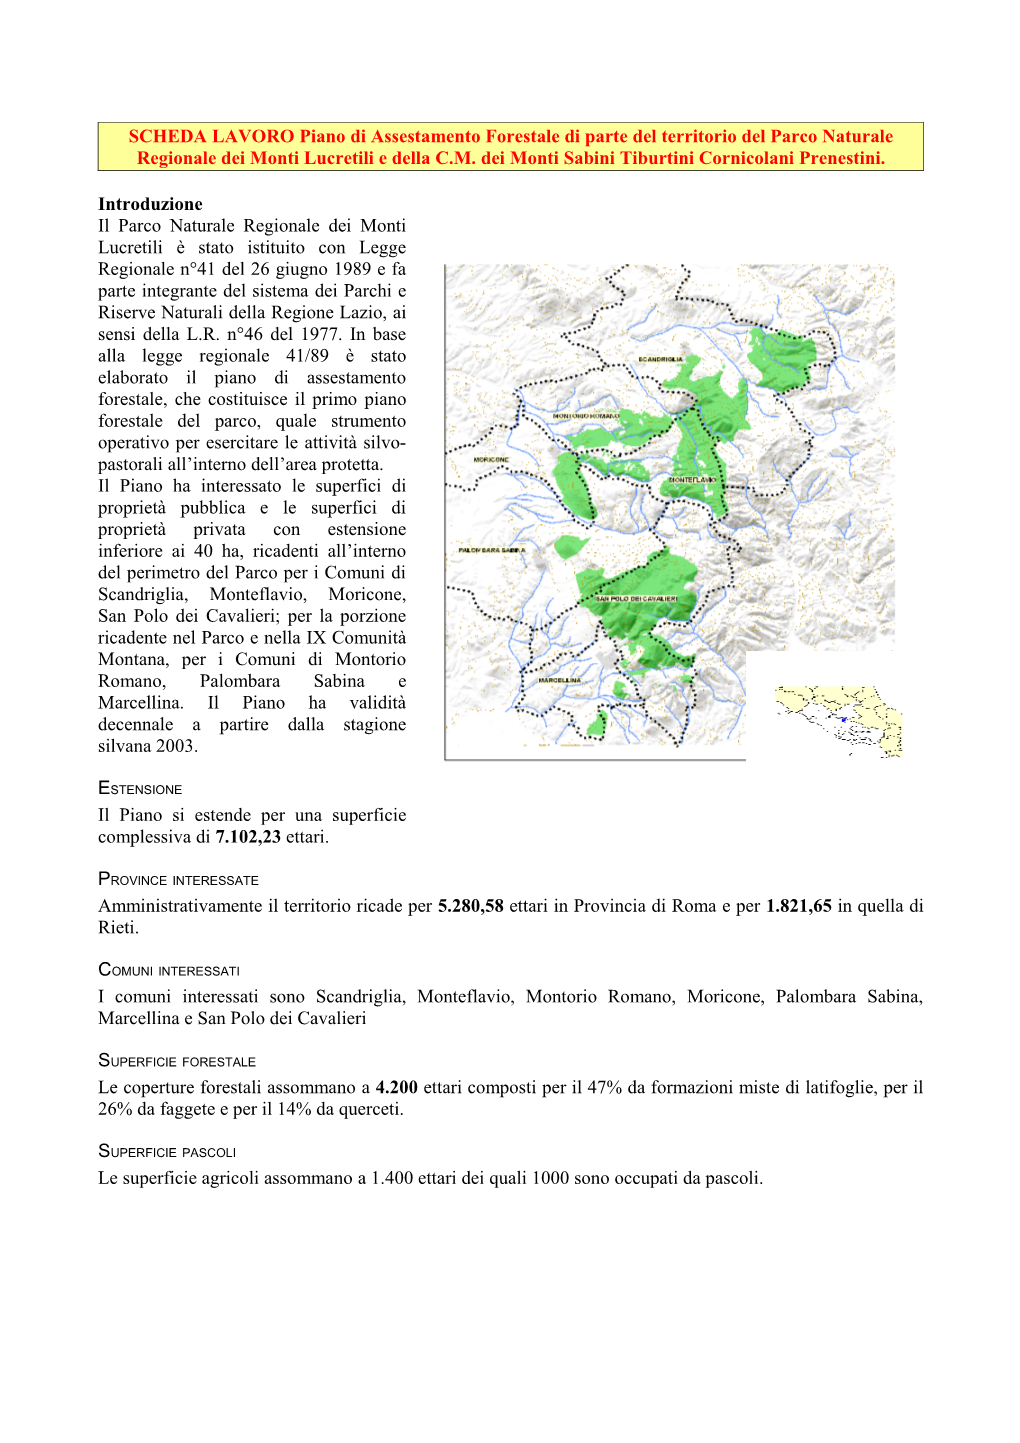 SCHEDA LAVORO Piano Di Assestamento Forestale Di Parte Del Territorio Del Parco Naturale Regionale Dei Monti Lucretili E Della C.M